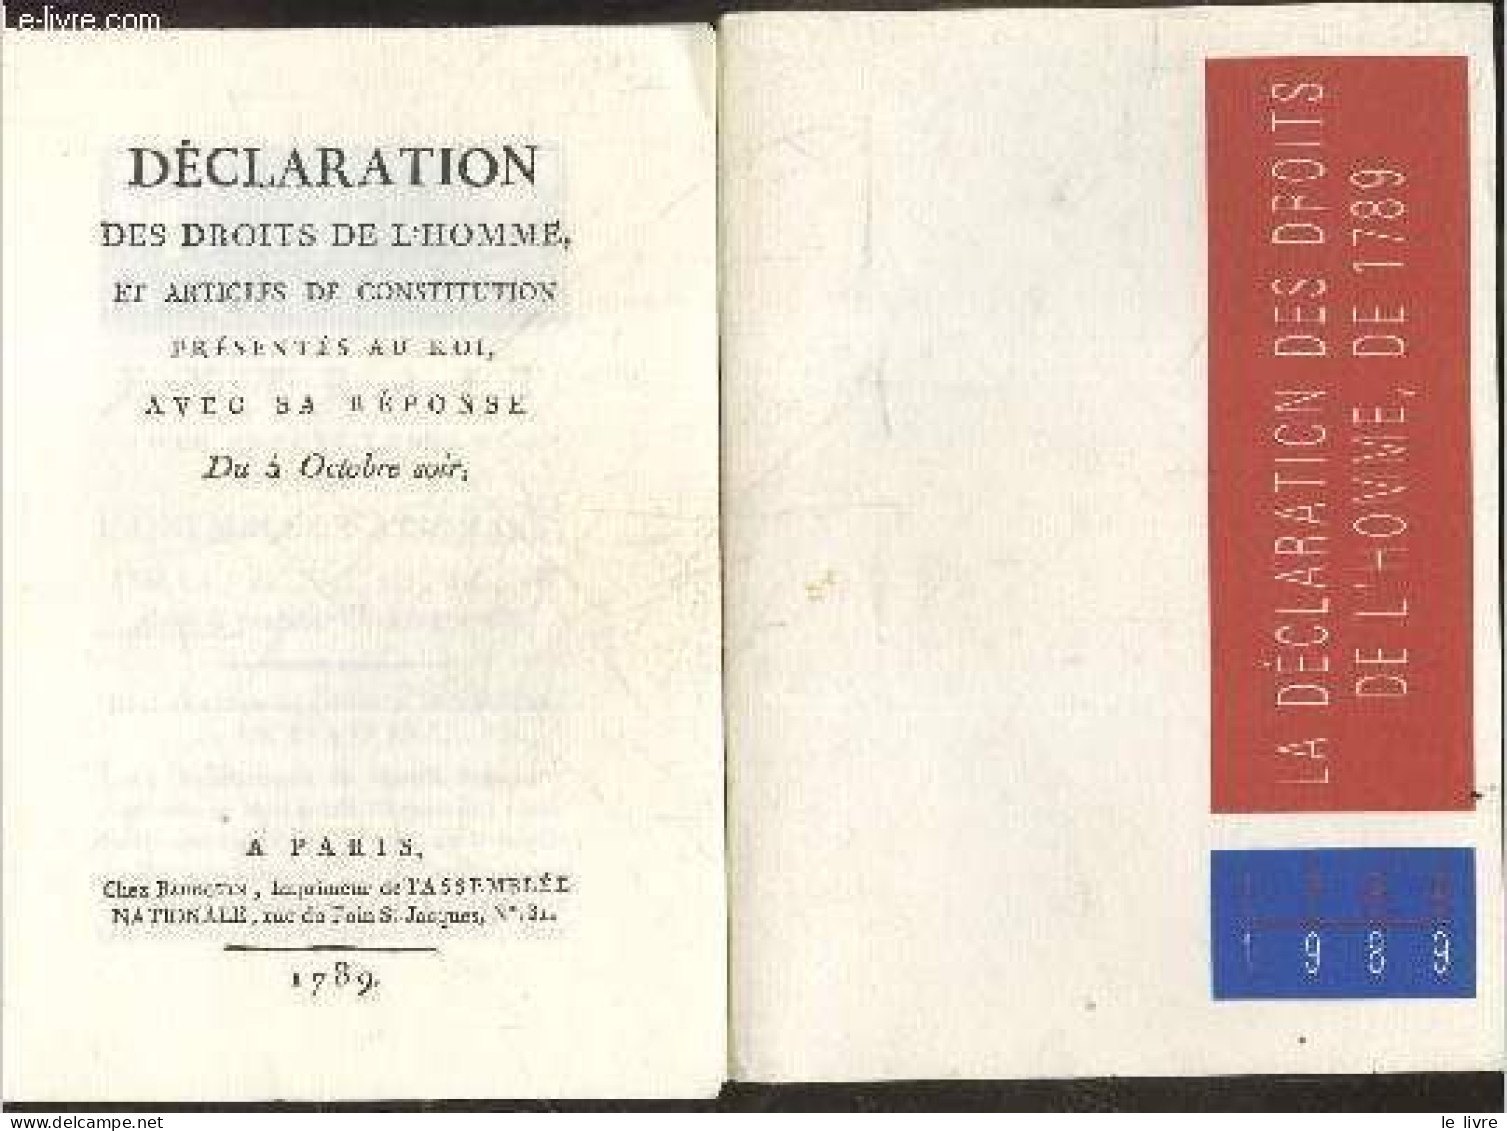 La Declaration Des Droits De L'homme De 1789 - 1789/1989 - COLLECTIF - 1989 - Politique